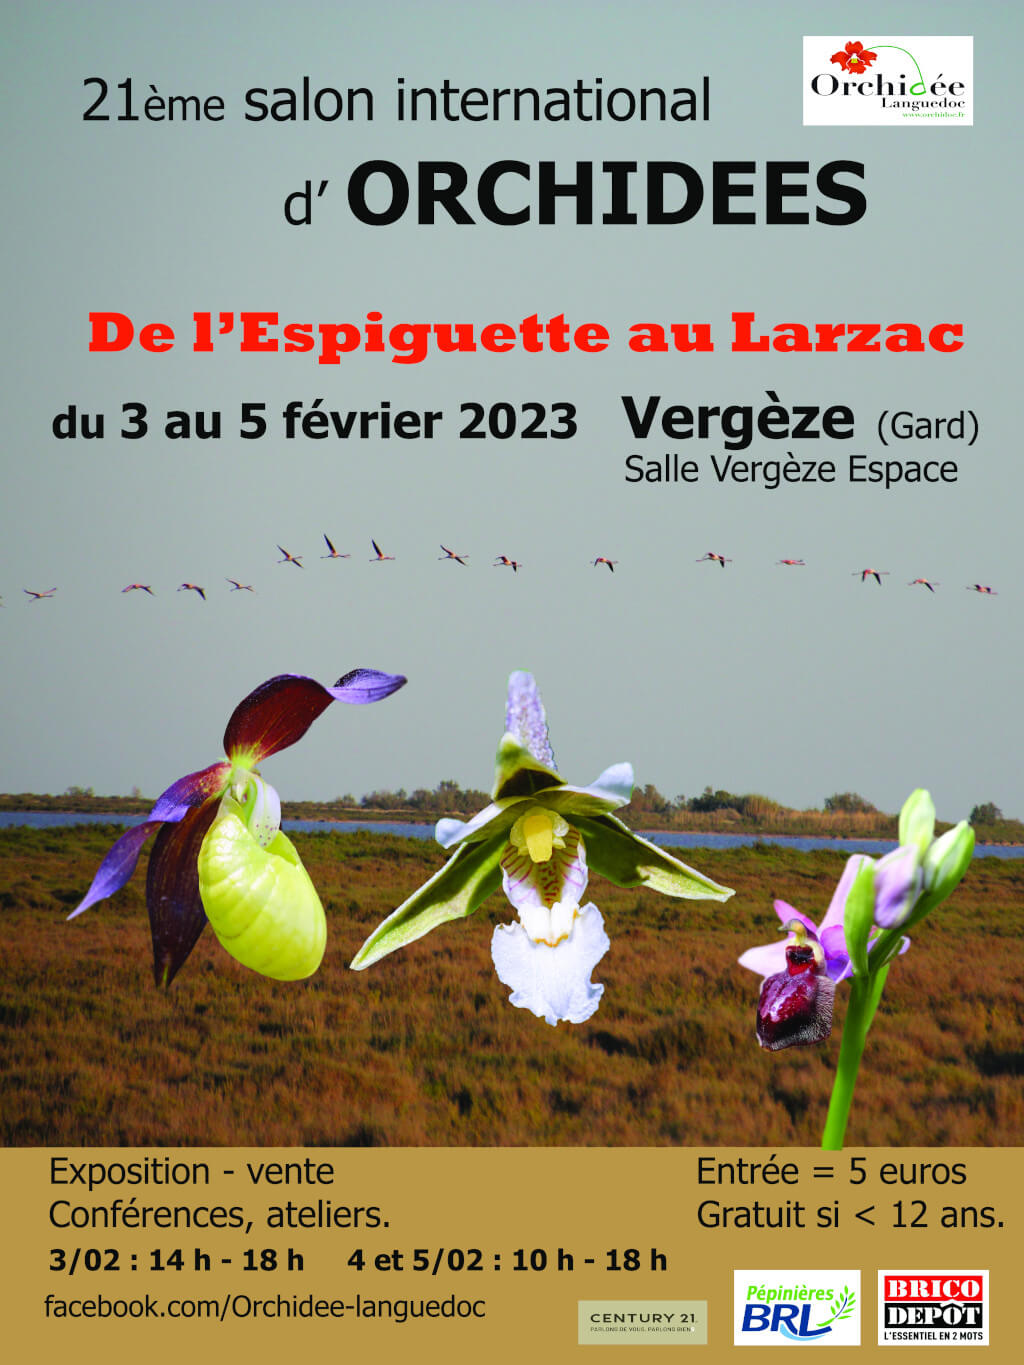 21e salon international d'orchidées à Vergèze du 3 au 5 fev. 2023